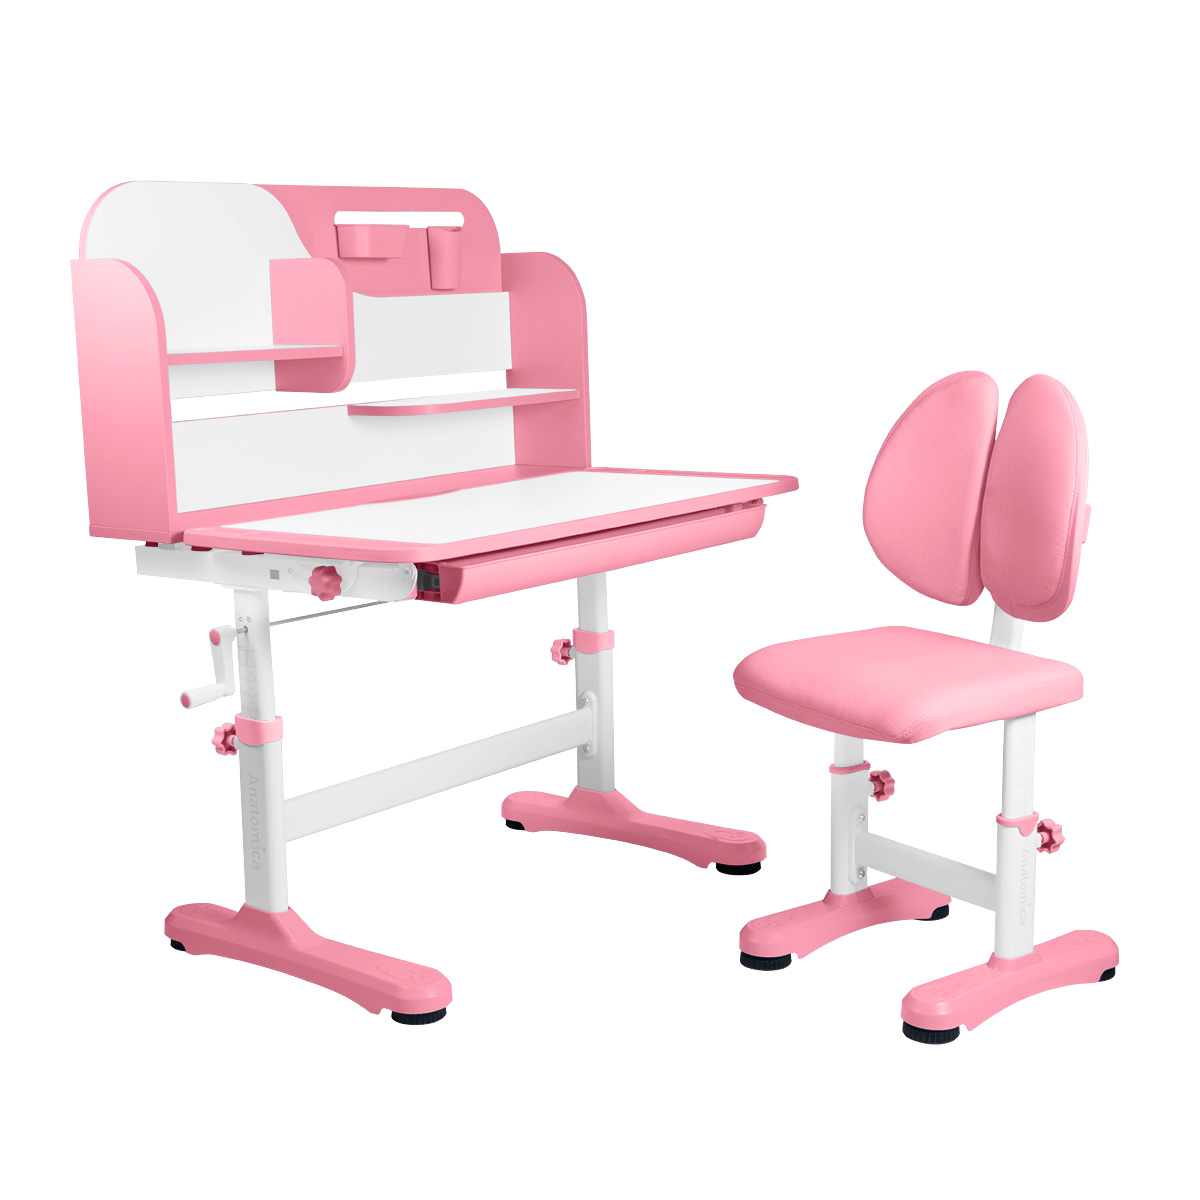 Комплект Anatomica Amadeo парта, стул, надстройка, выдвижной ящик, розовый комплект anatomica fiona парта стул надстройка выдвижной ящик серый